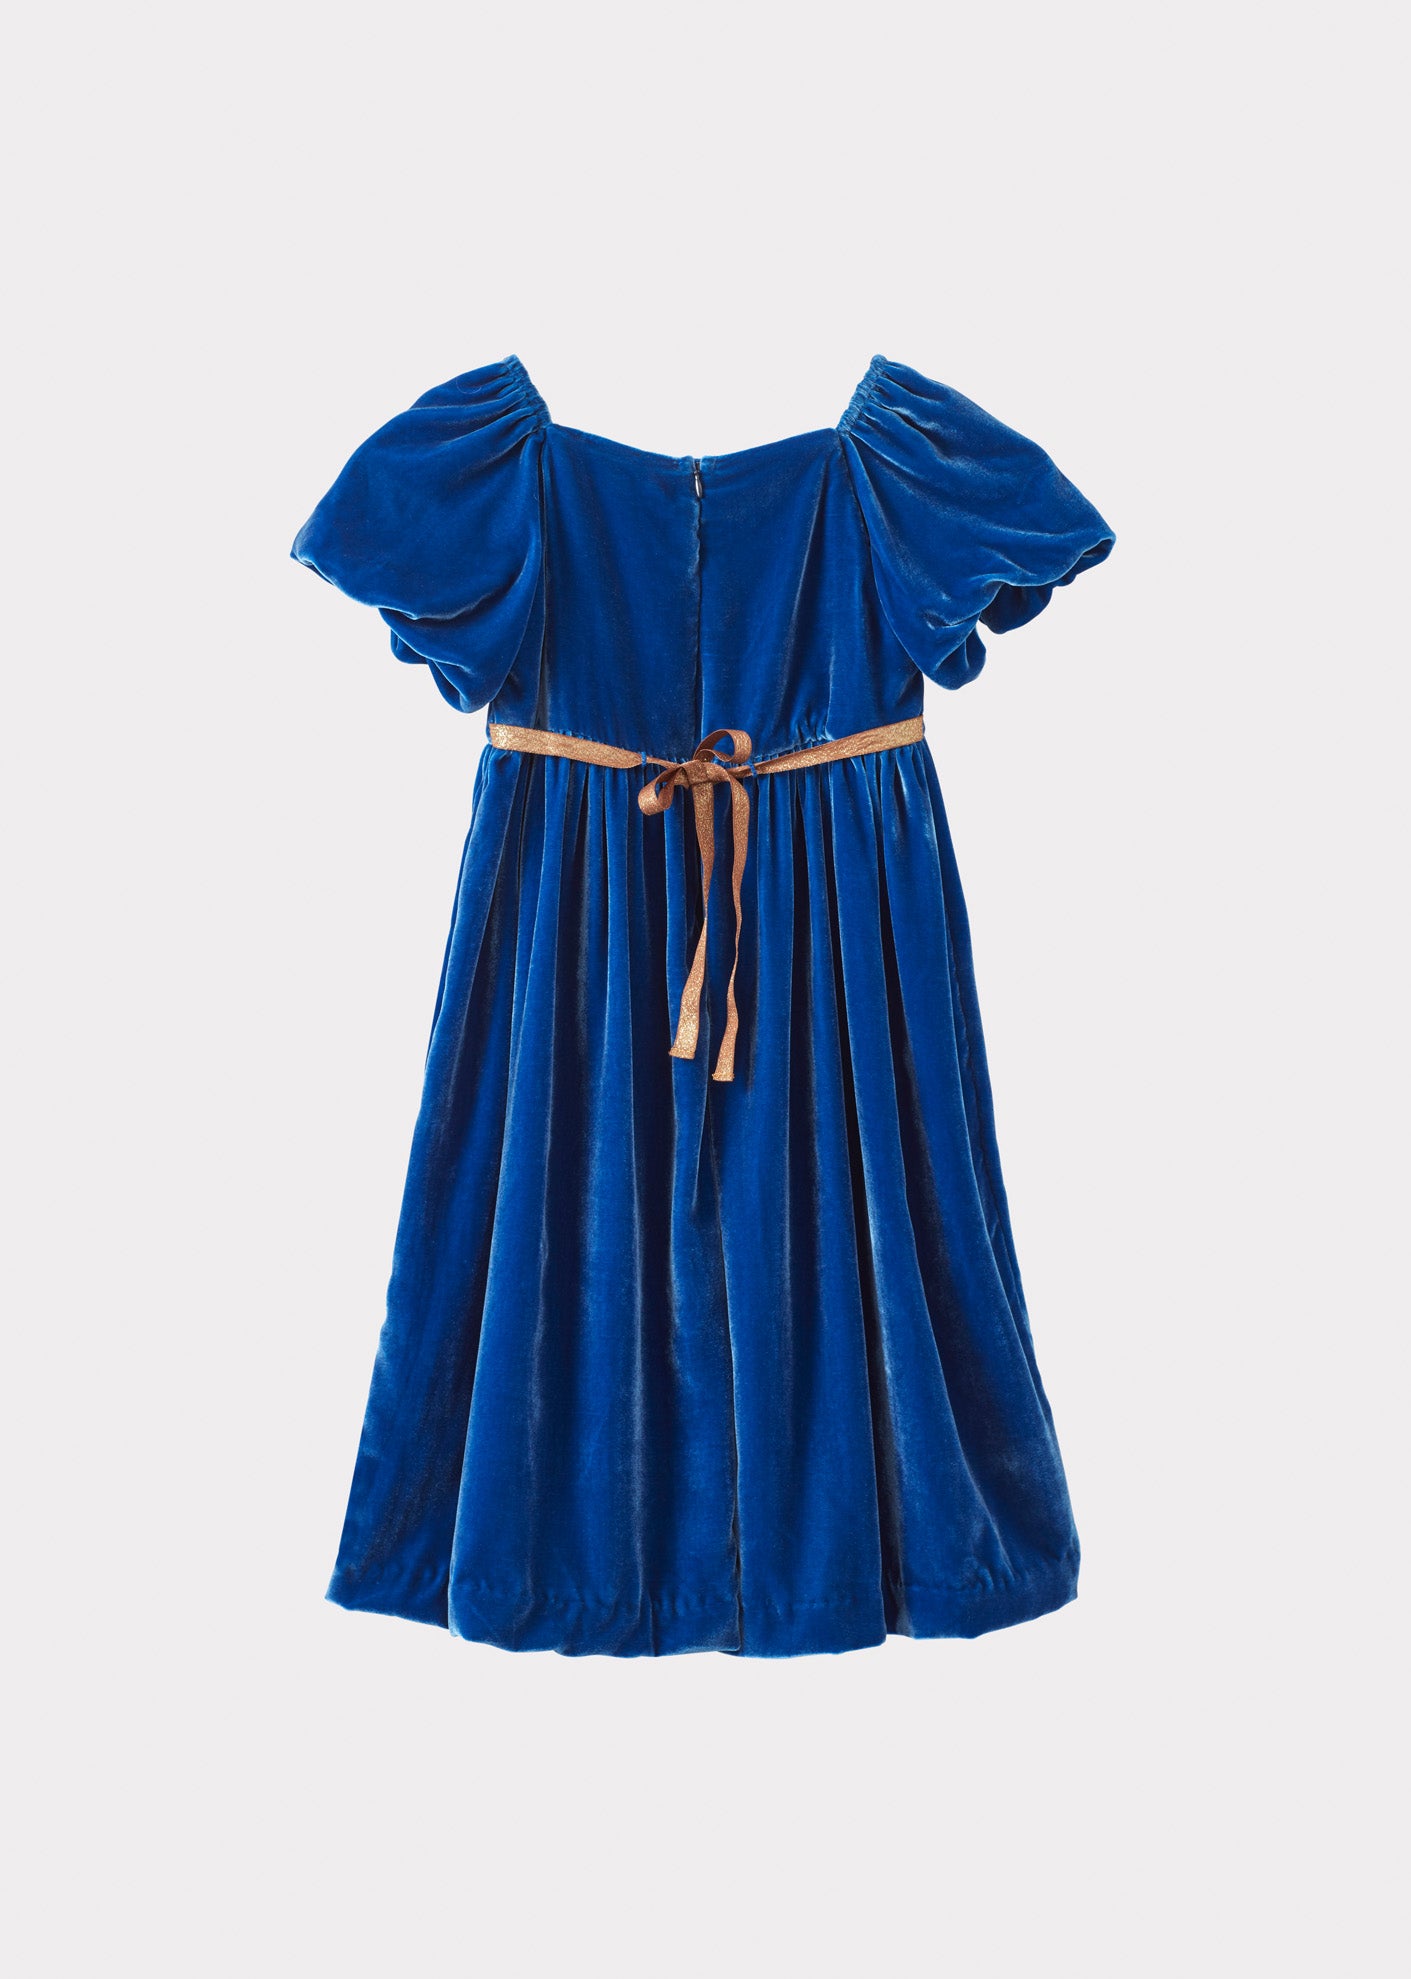 FRANGULA DRESS - ROYAL BLUE